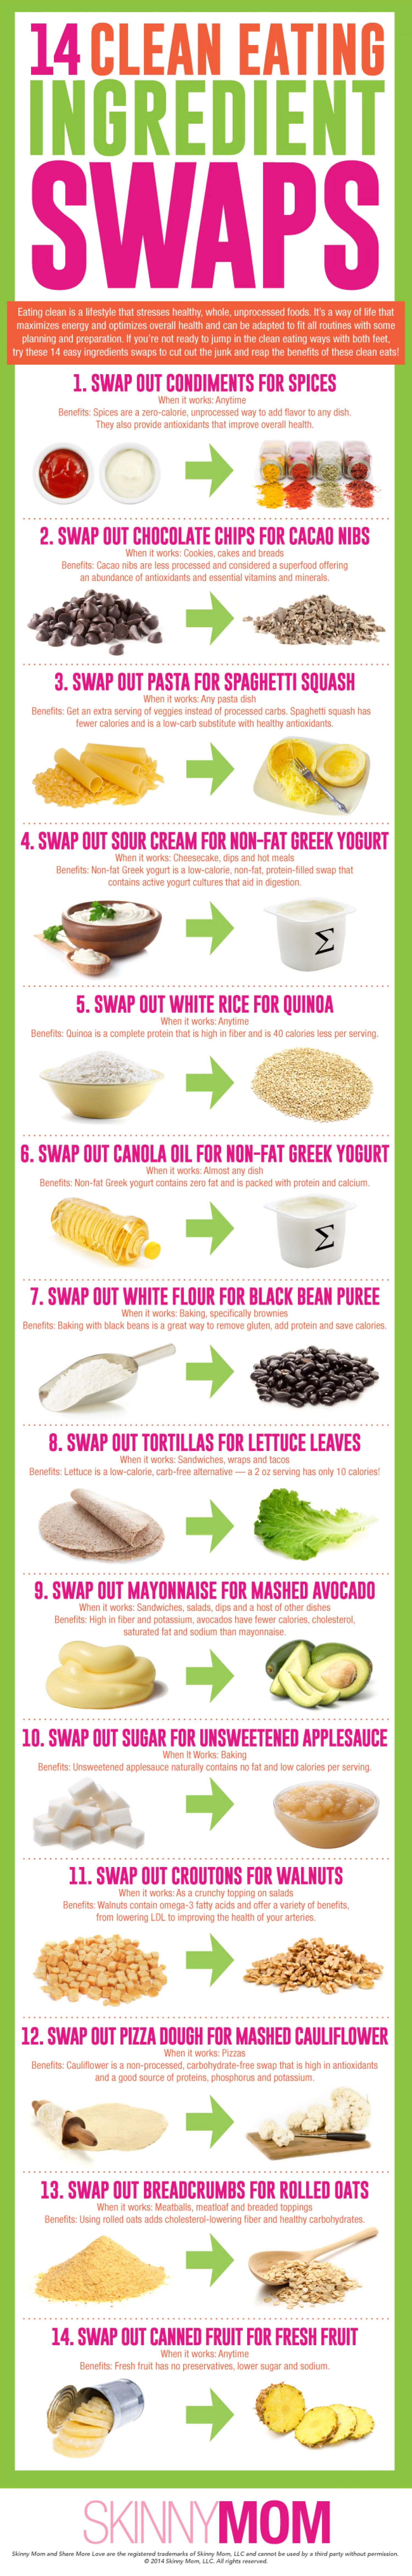 14 Clean Eating Ingredient Swaps